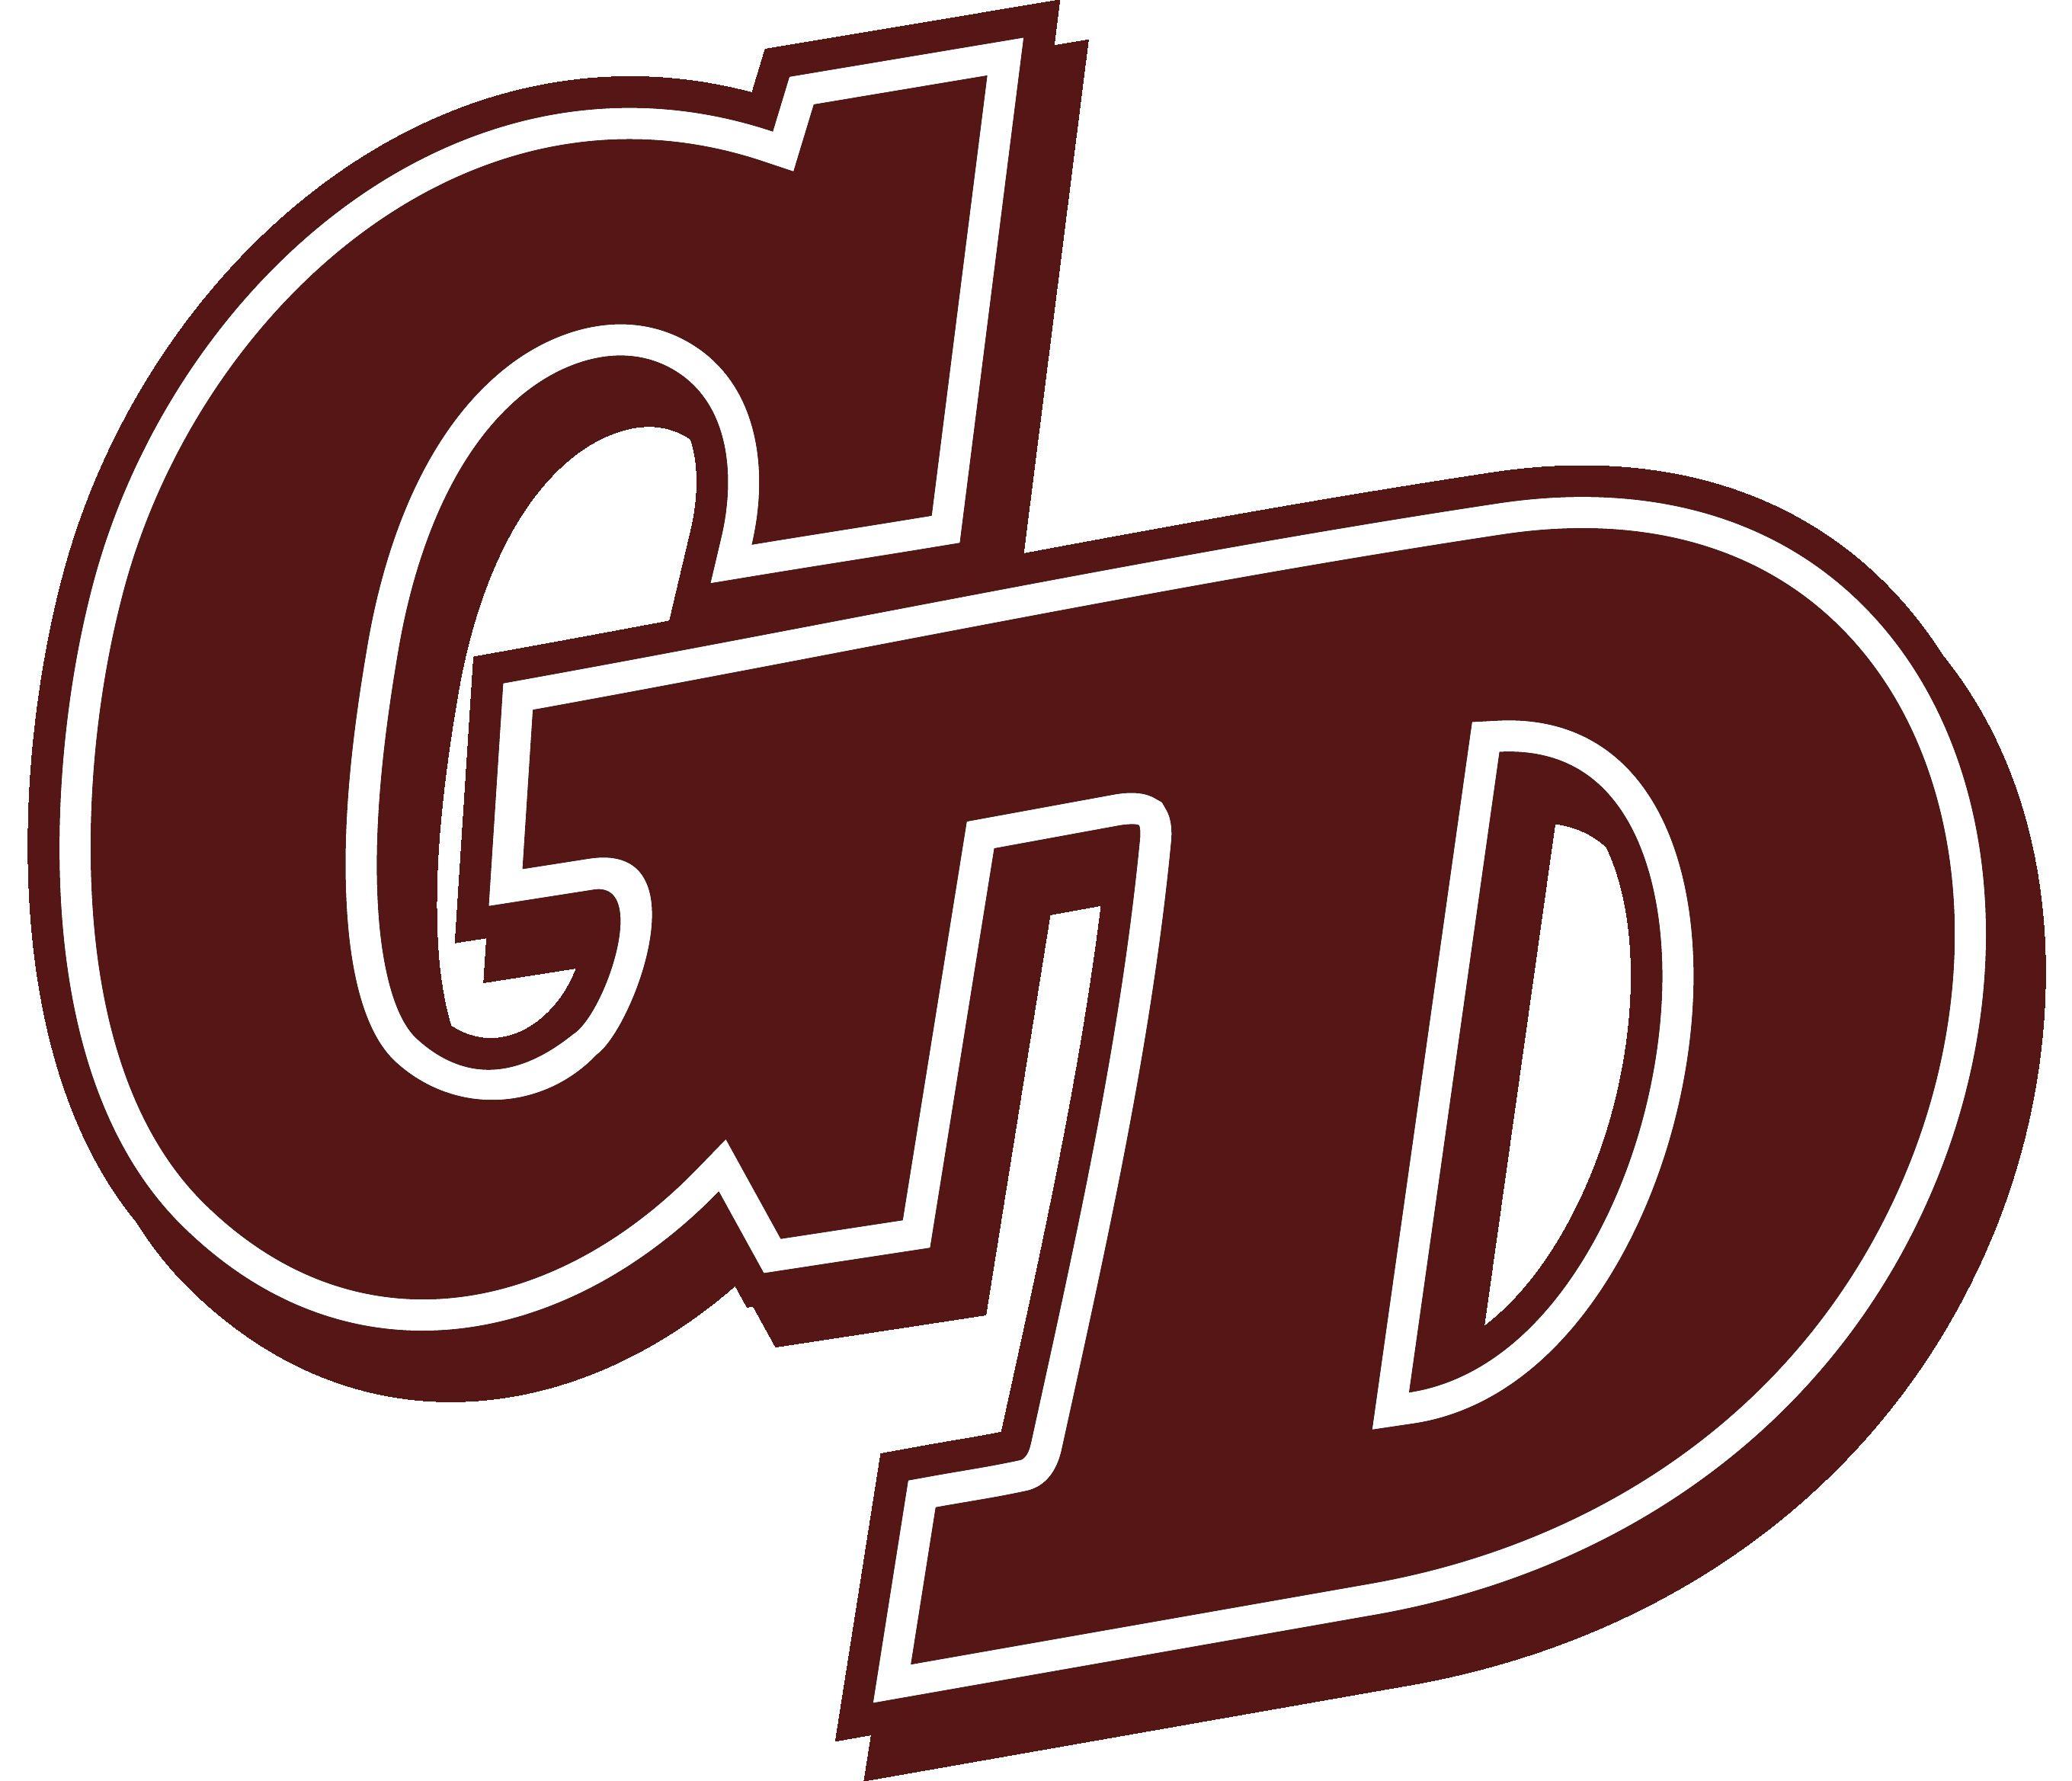 GD Logo - Gd Logos